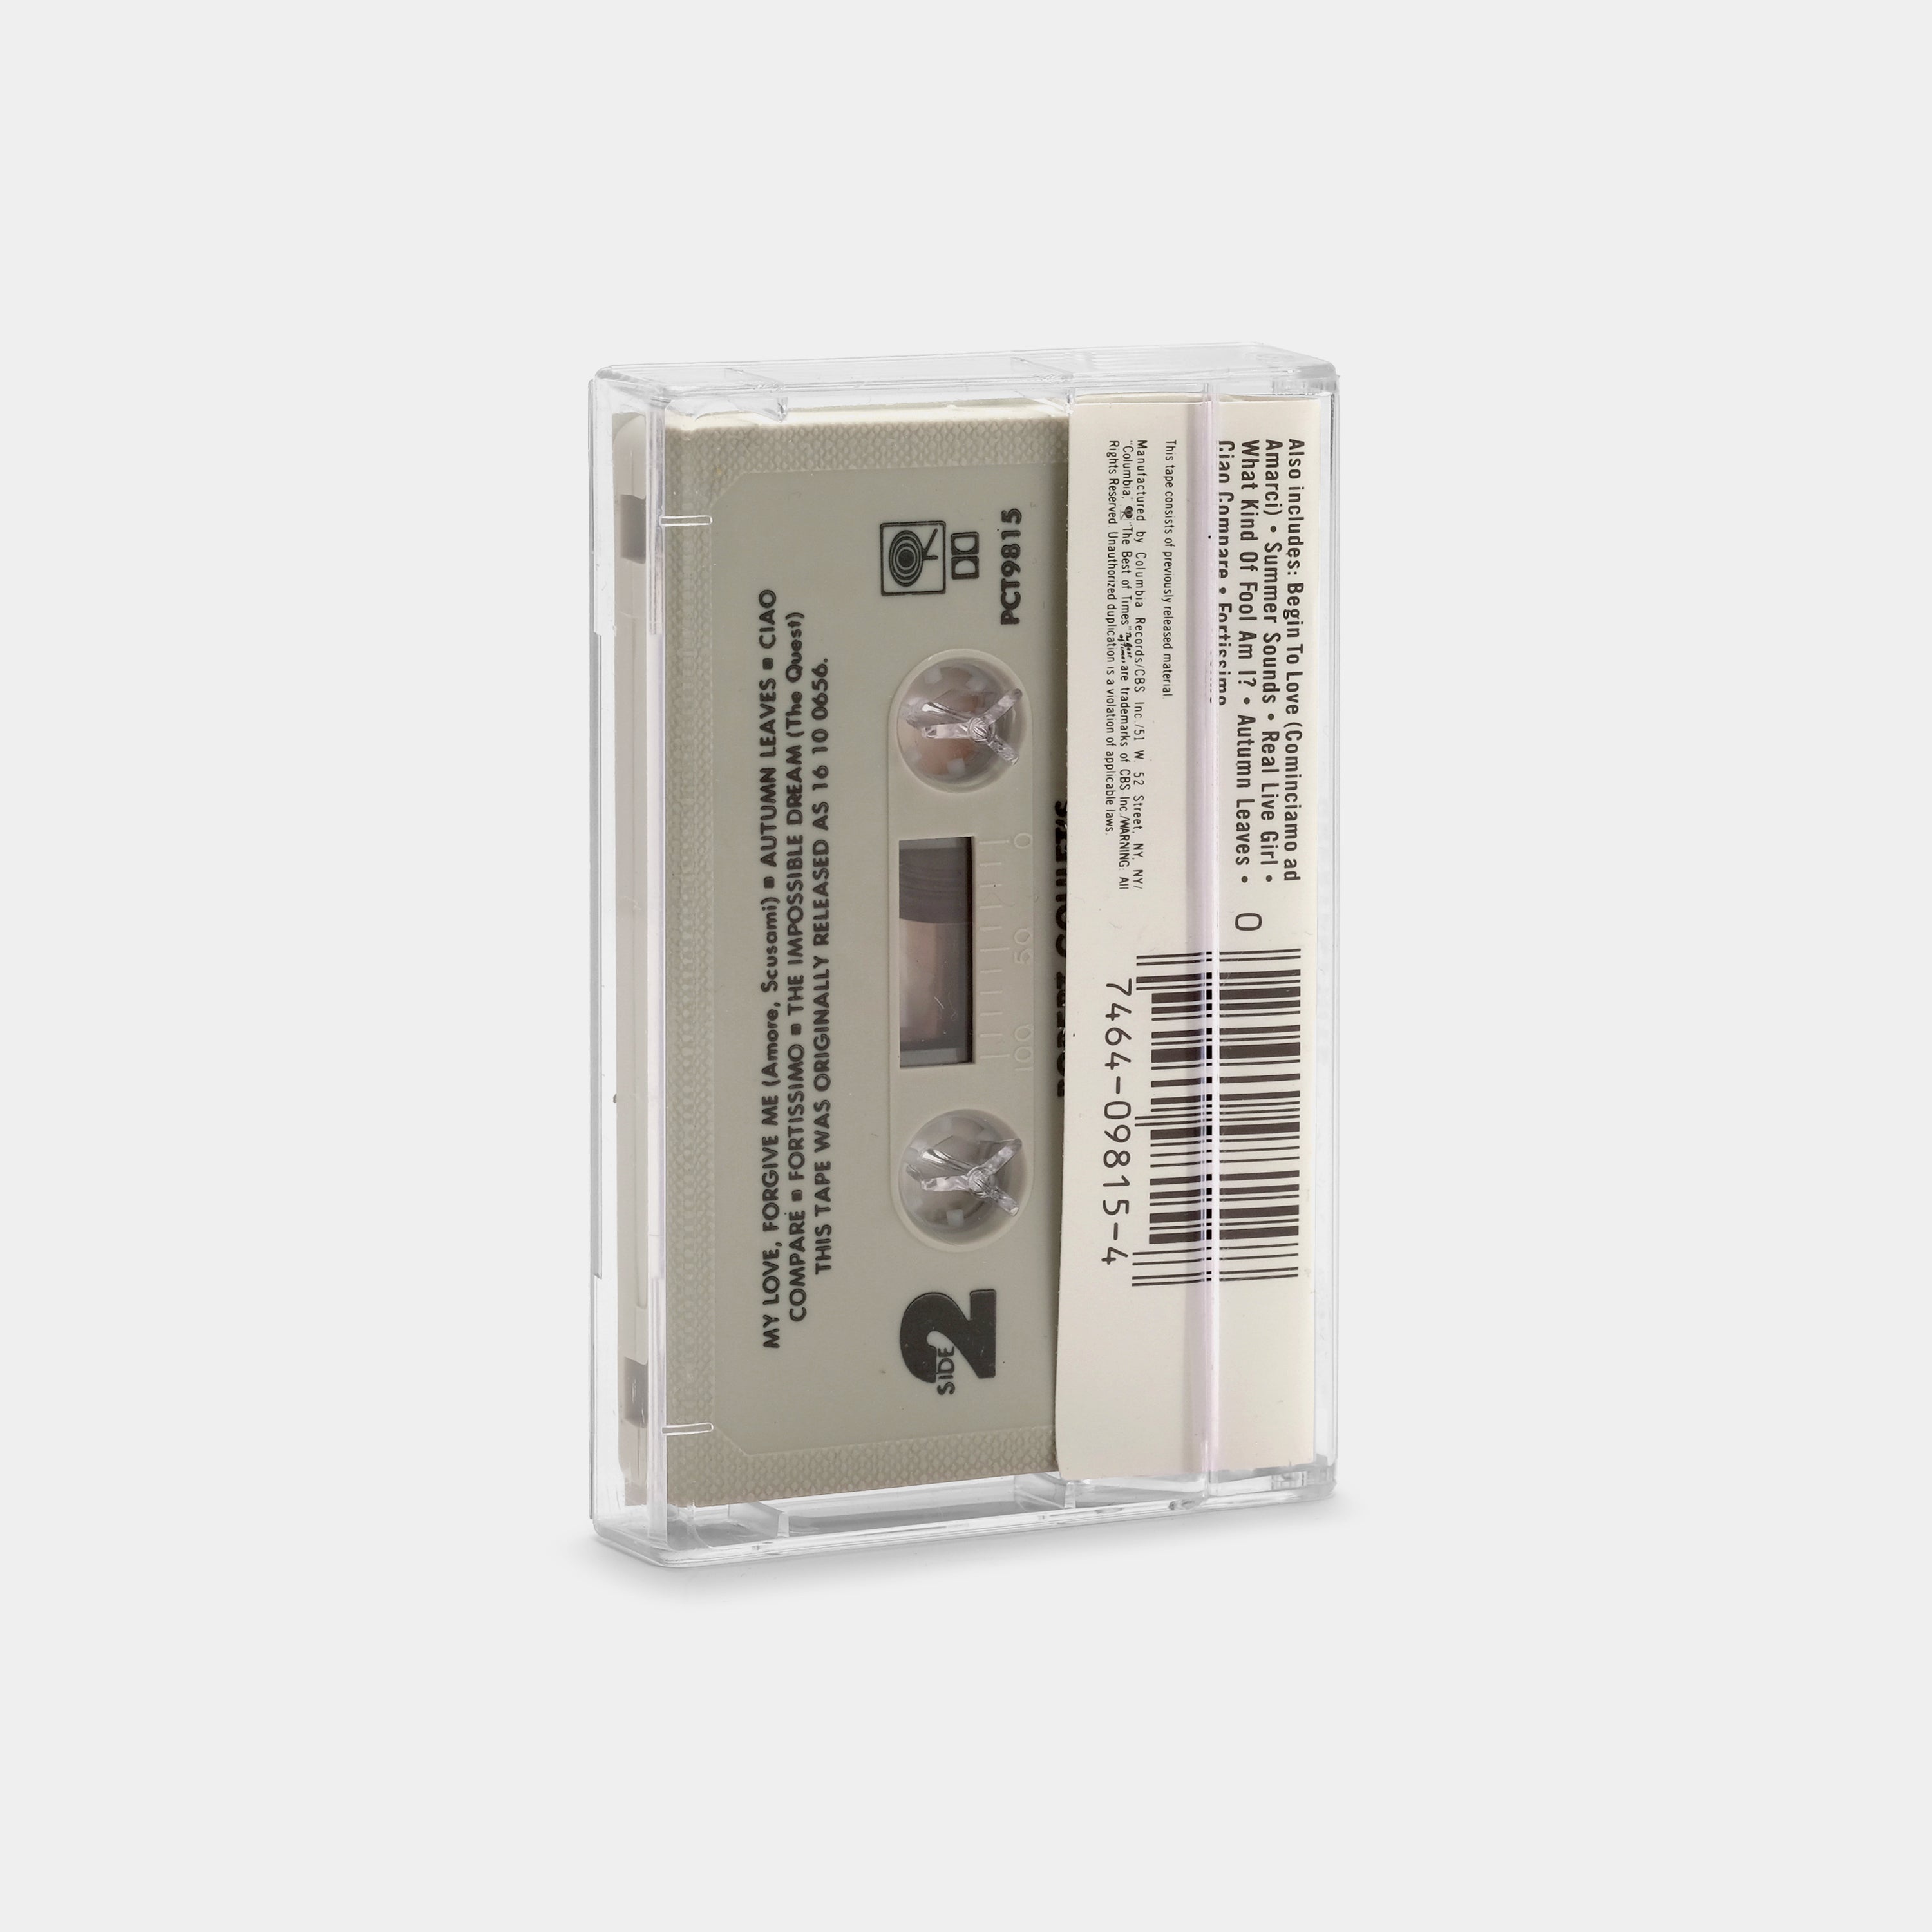 Robert Goulet - Greatest Hits Cassette Tape